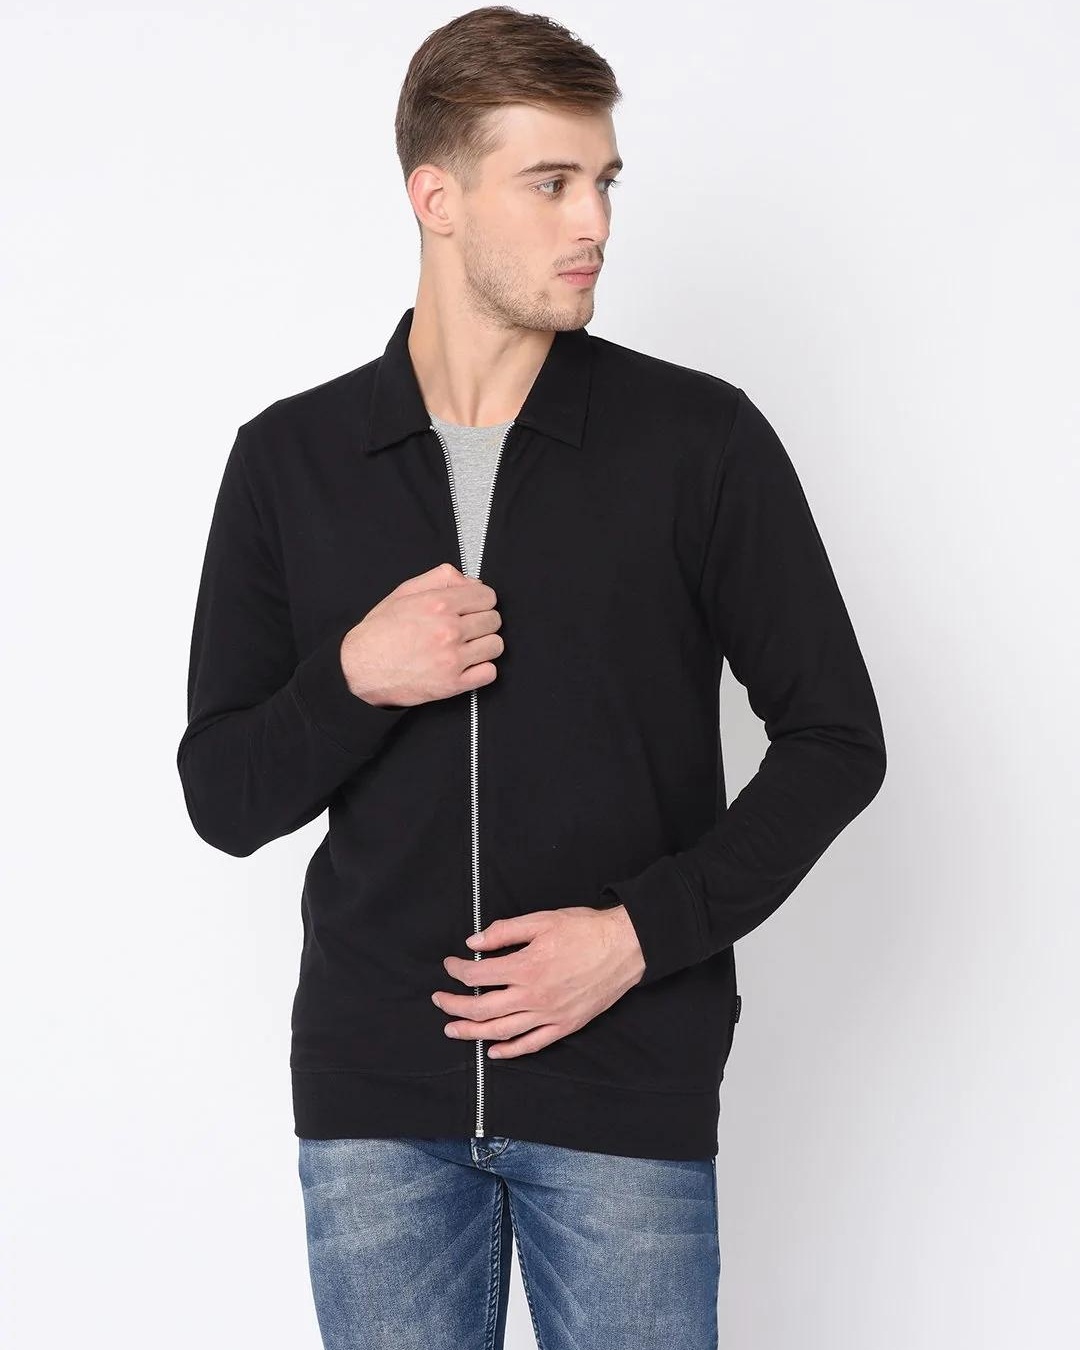 Buy Men's Black Zipped Jacket Online at Bewakoof